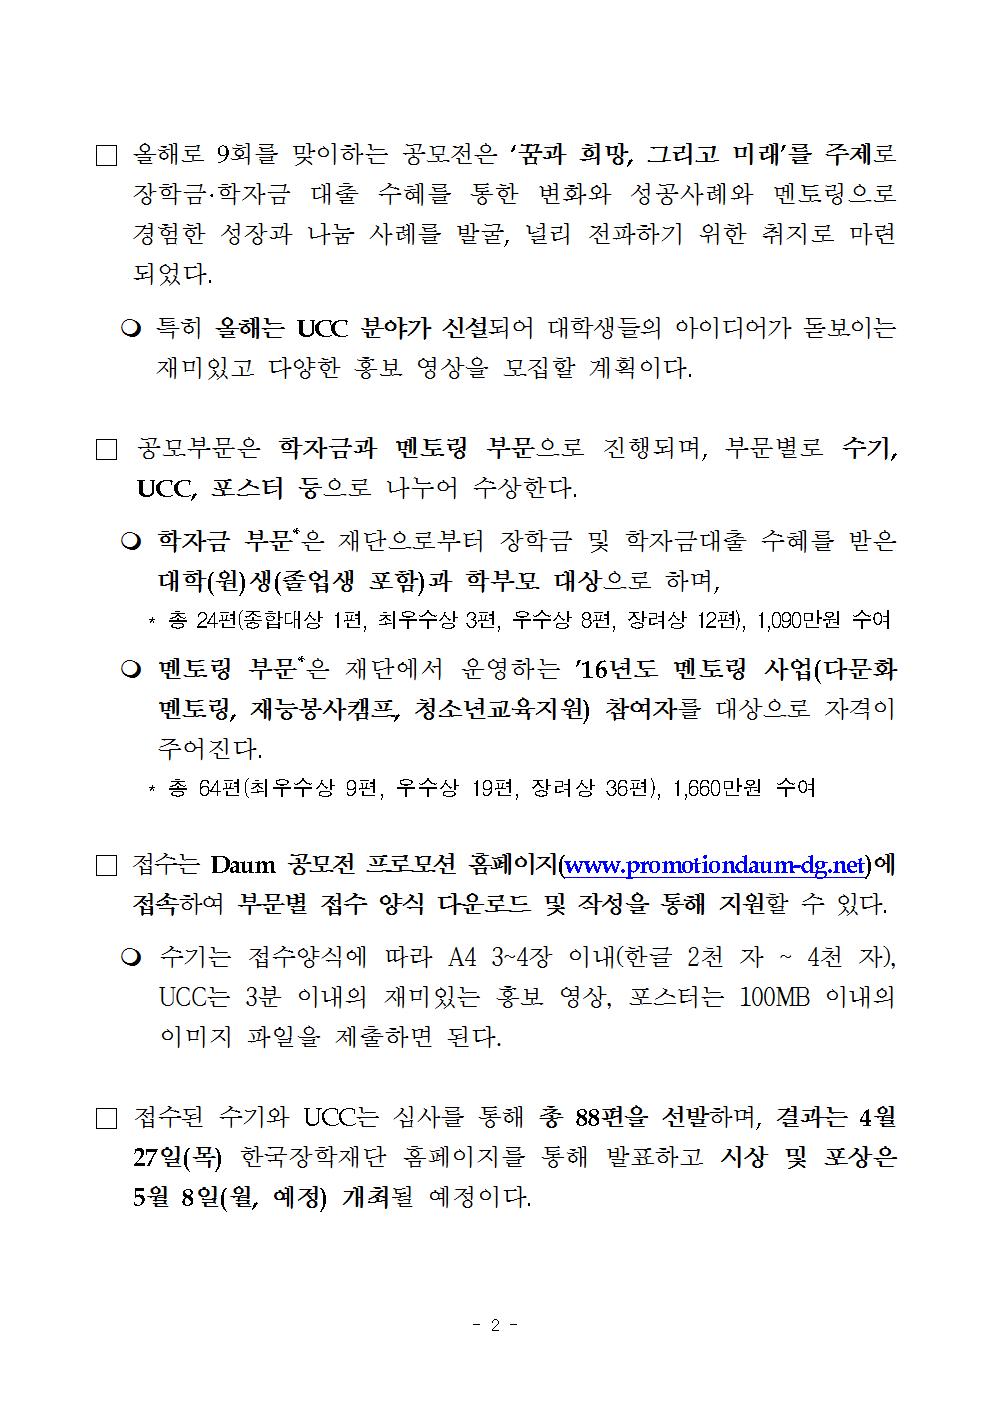 03-13(월)[보도자료] 제9회 한국장학재단 수기 UCC 공모전 개최(최종)002.jpg